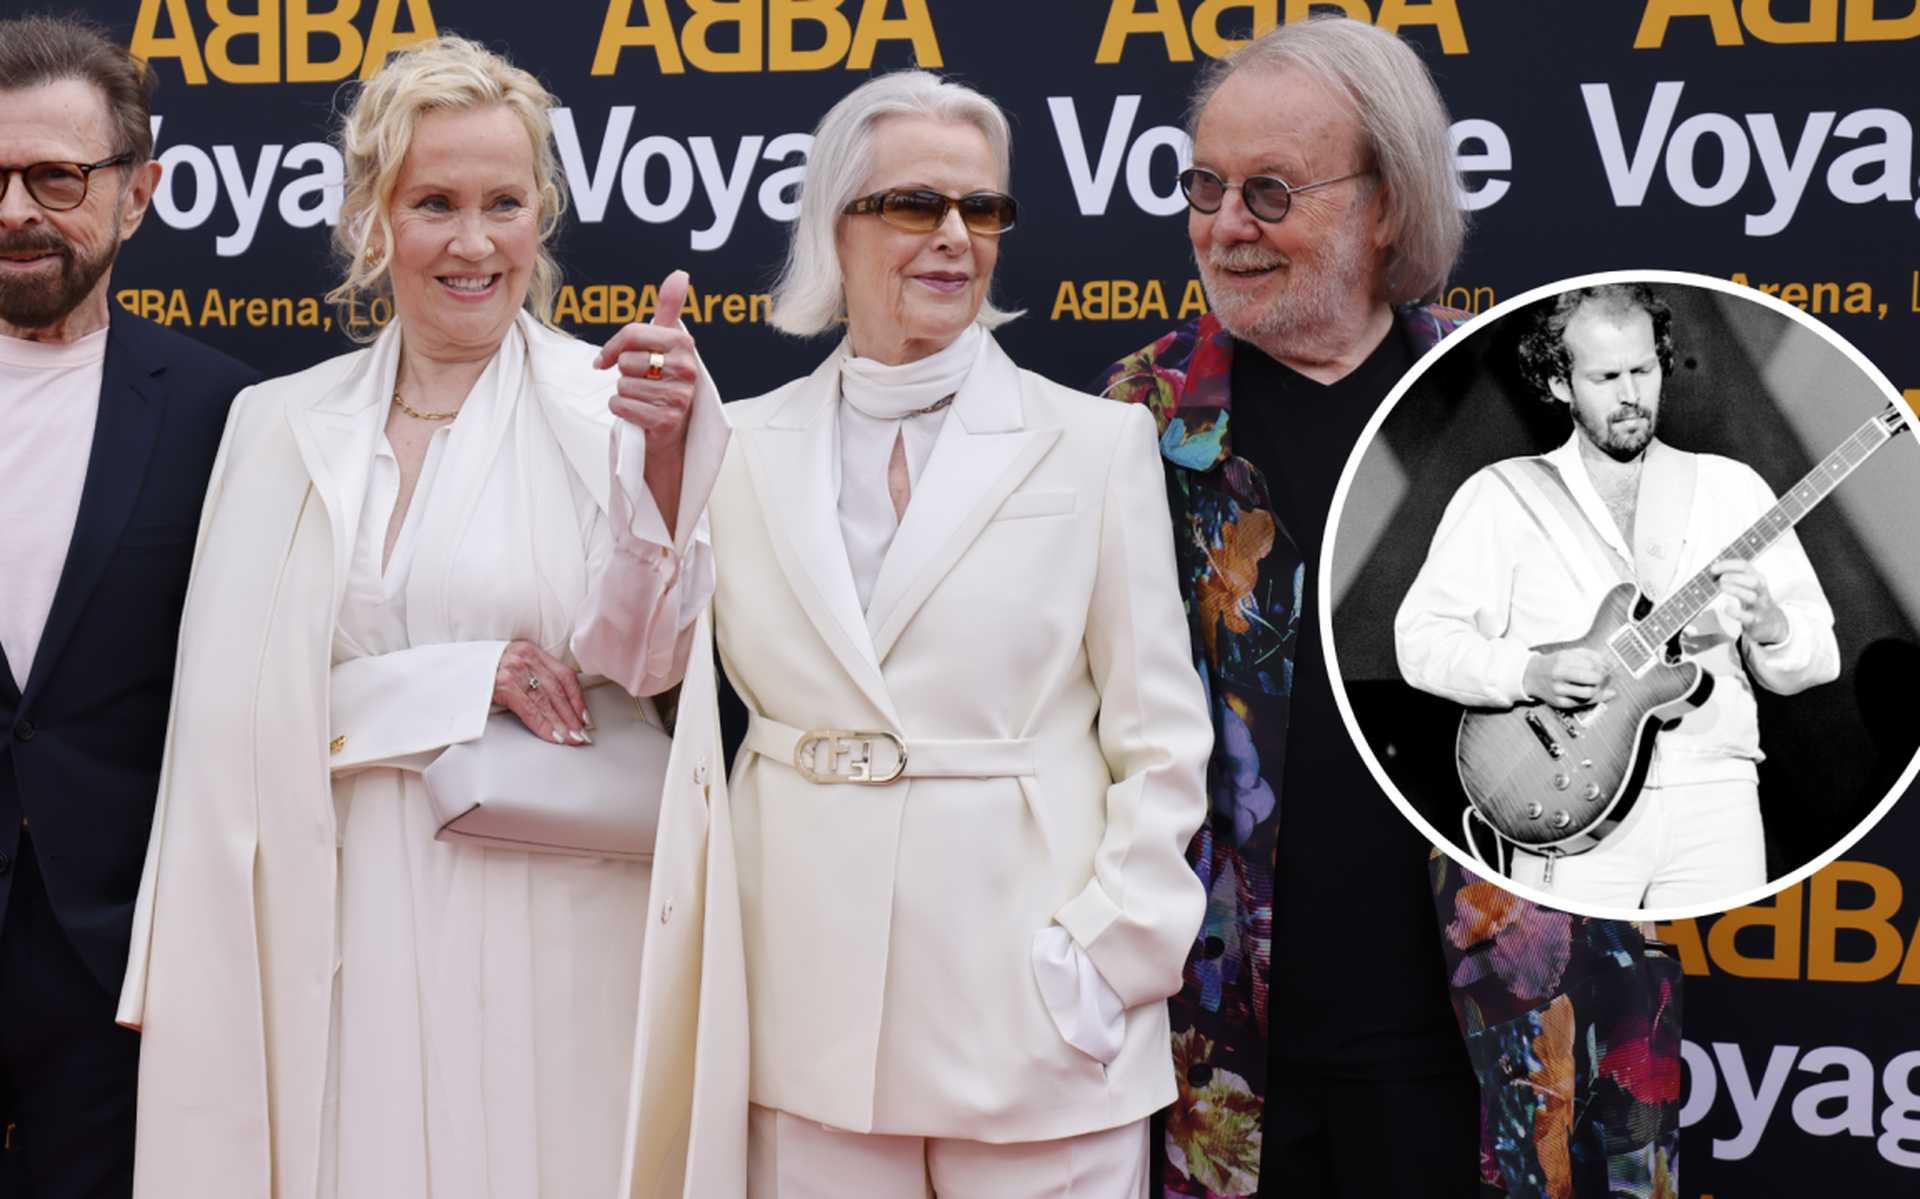 De voormalige leden van ABBA op een rij: Bjorn Ulvaeus, Agnetha Faltskog, Anni-Frid Lyngstad en Benny Andersson. Rechts: Lasse Wellander.